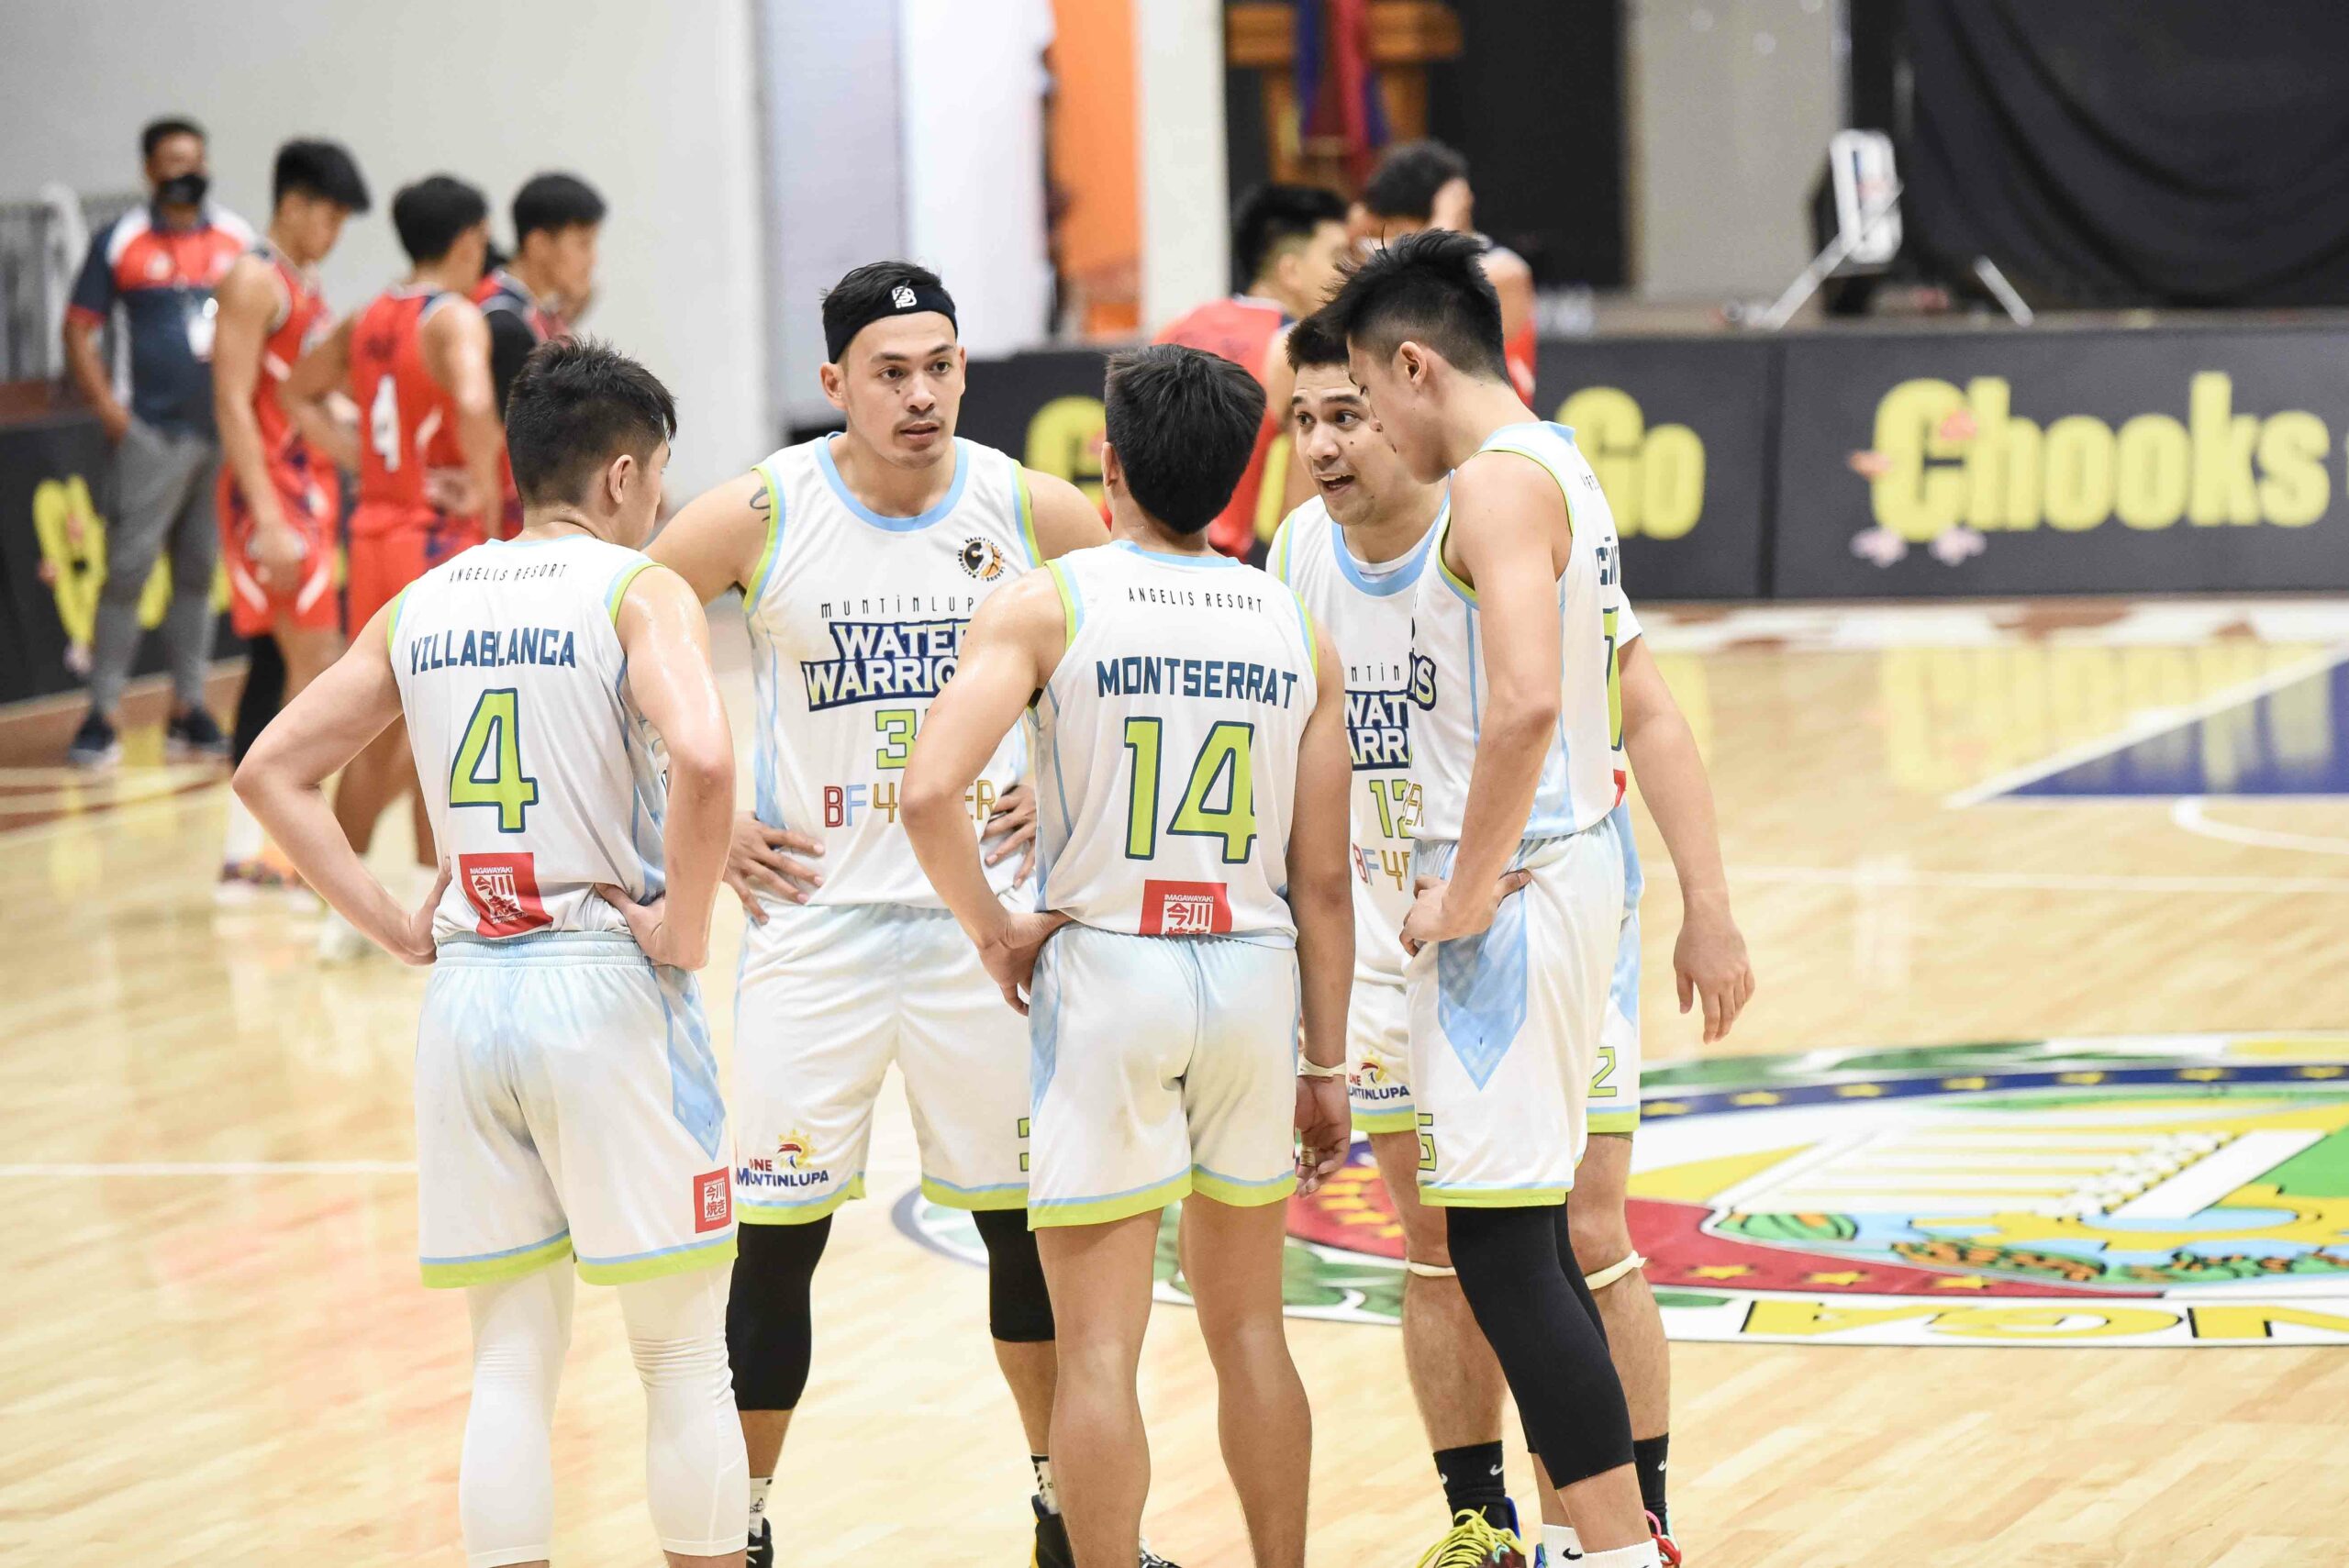 2021-Chooks-NBL-La-Union-vs-Muntinlupa-Water-Warriors-scaled La Union sweeps Muntinlupa, sets up NBL Finals rematch vs Pampanga Basketball News VisMin Super Cup  - philippine sports news